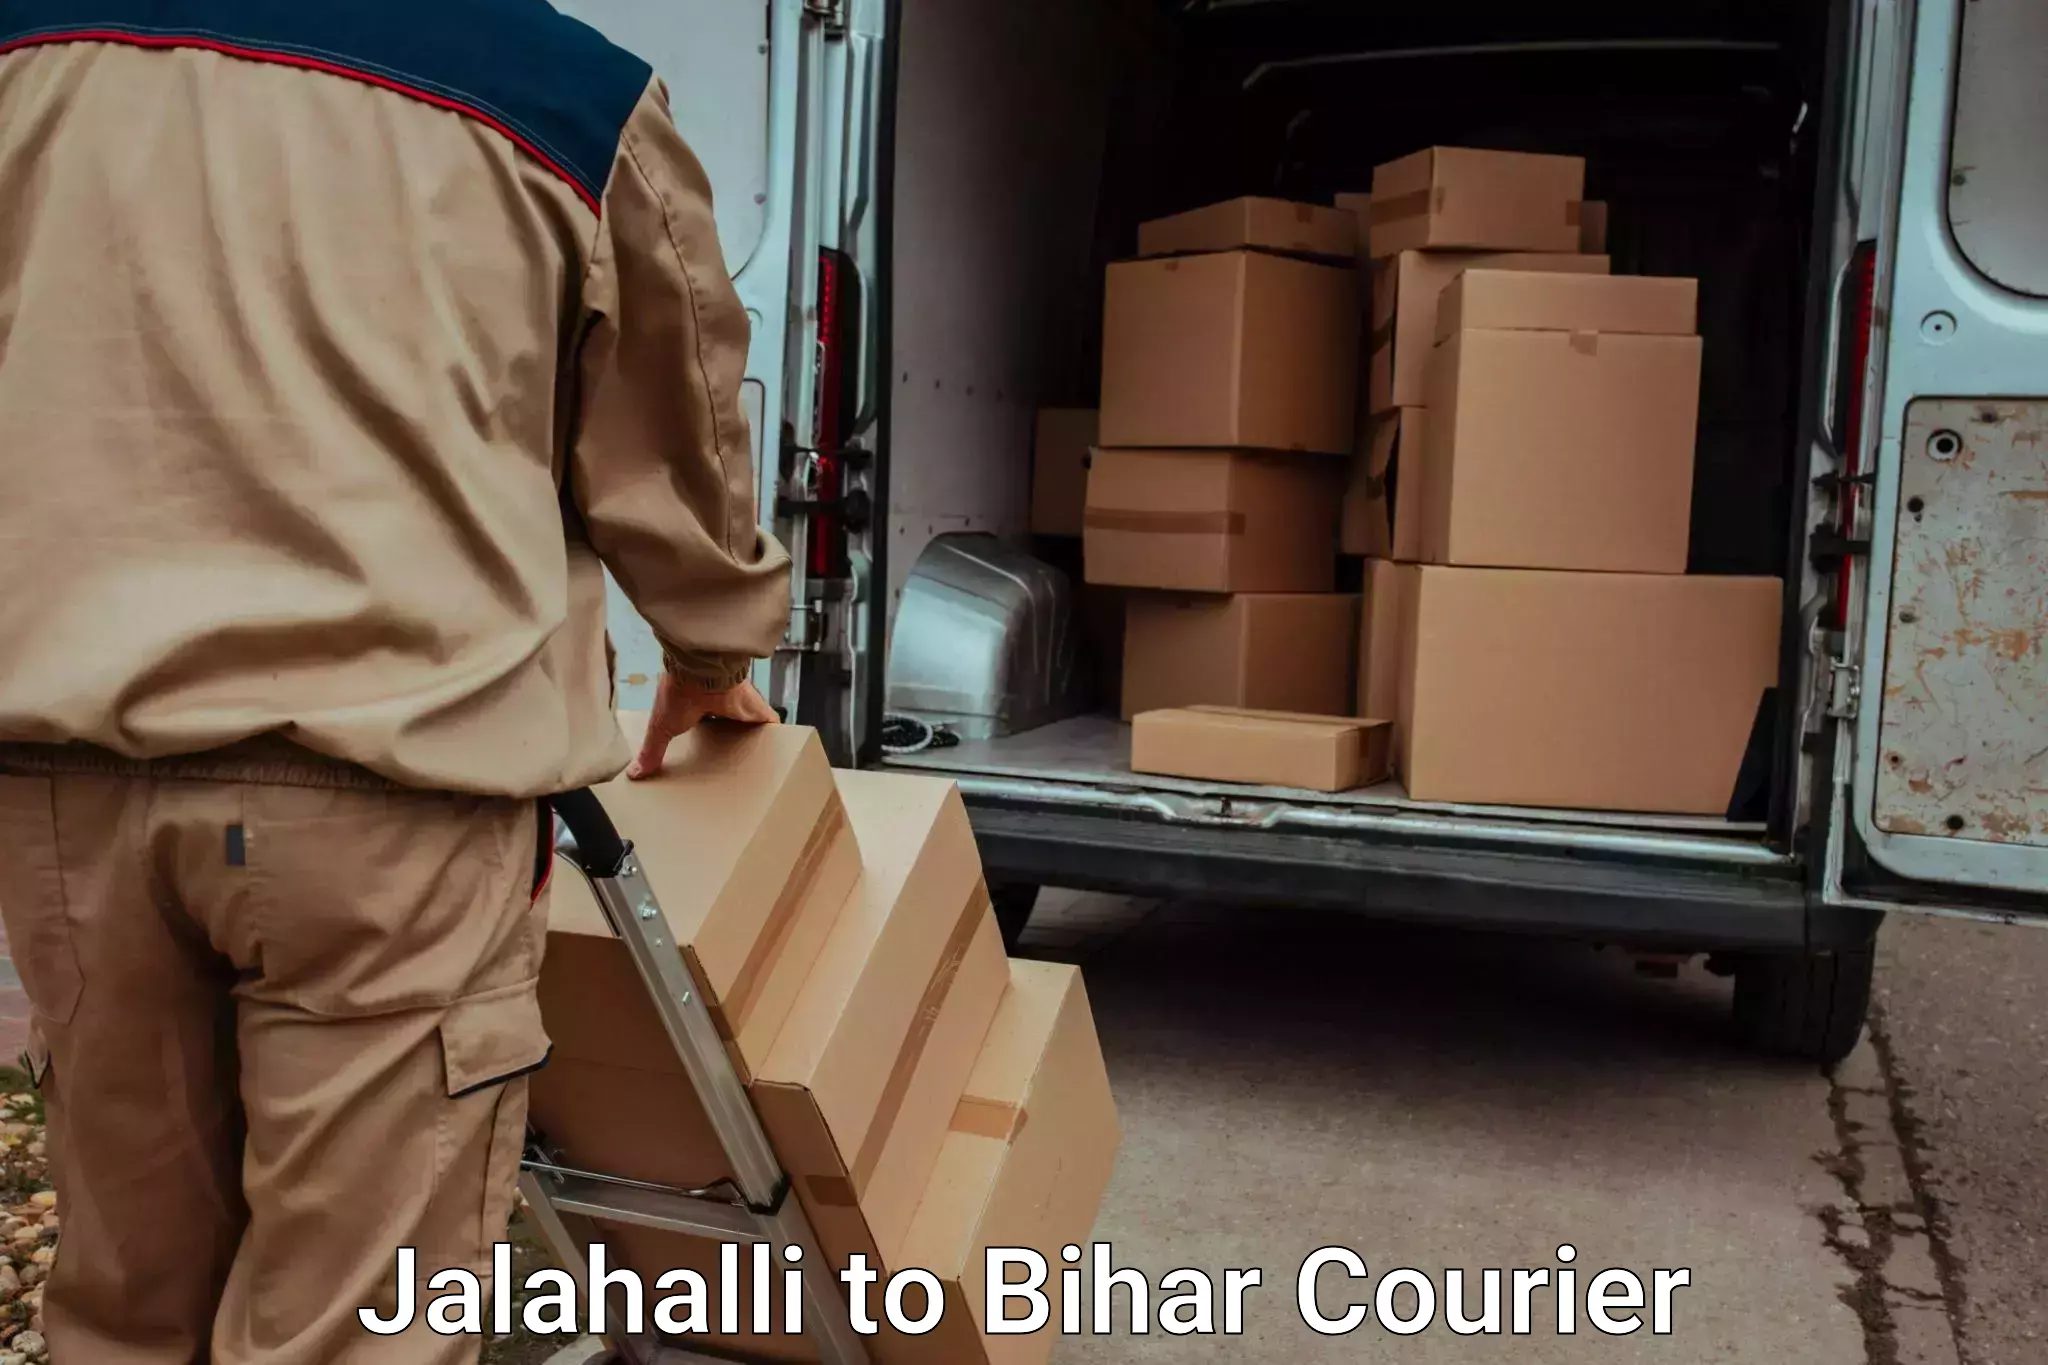 Electronic items luggage shipping Jalahalli to Jhajha